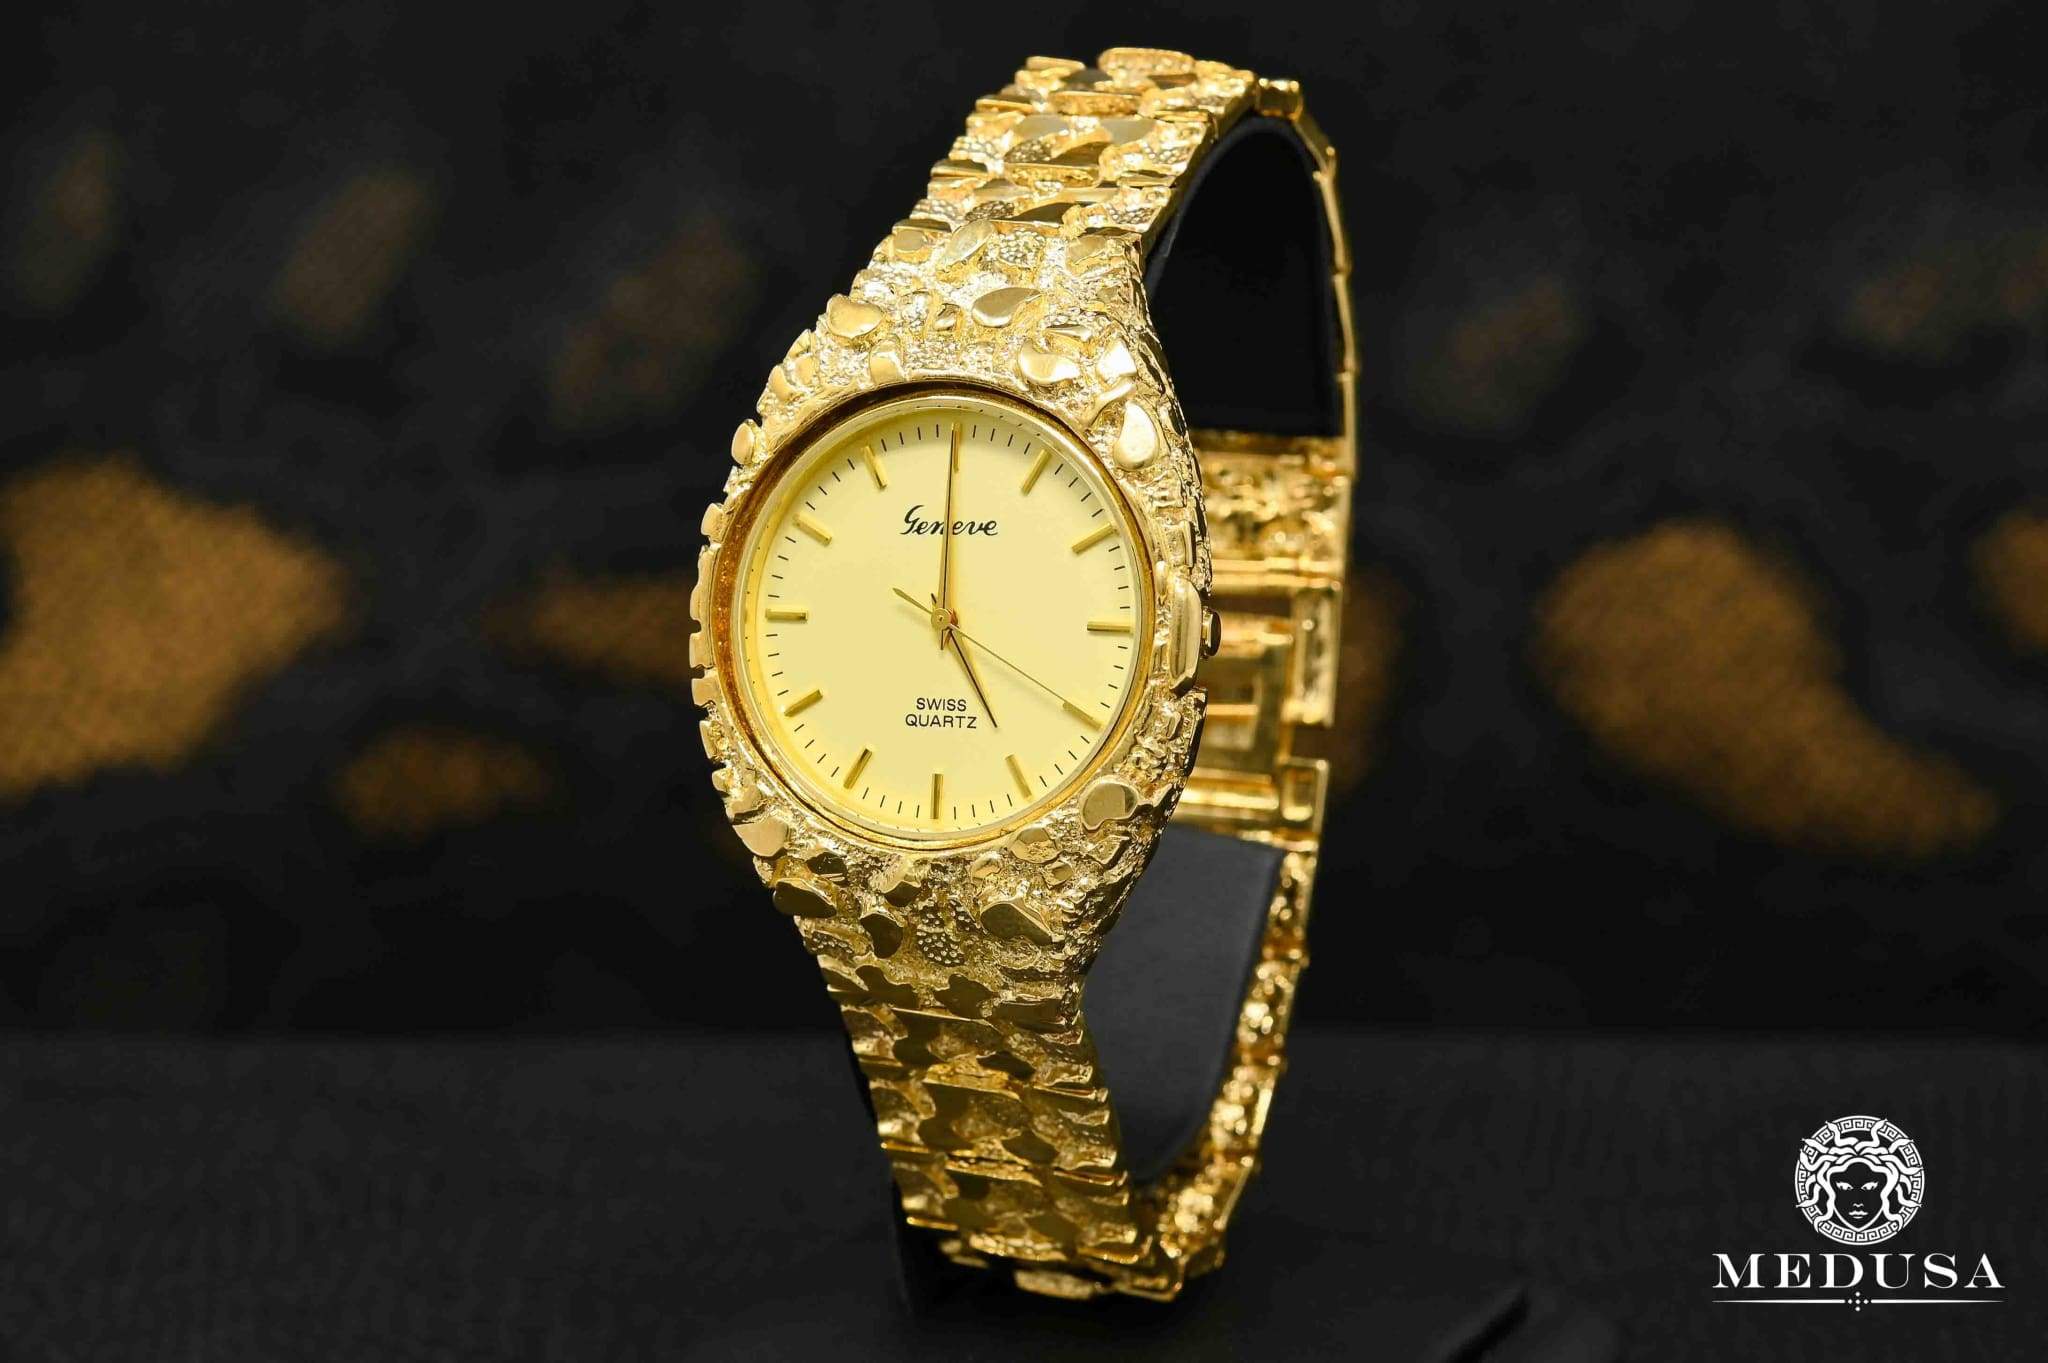 10k gold rolex watch